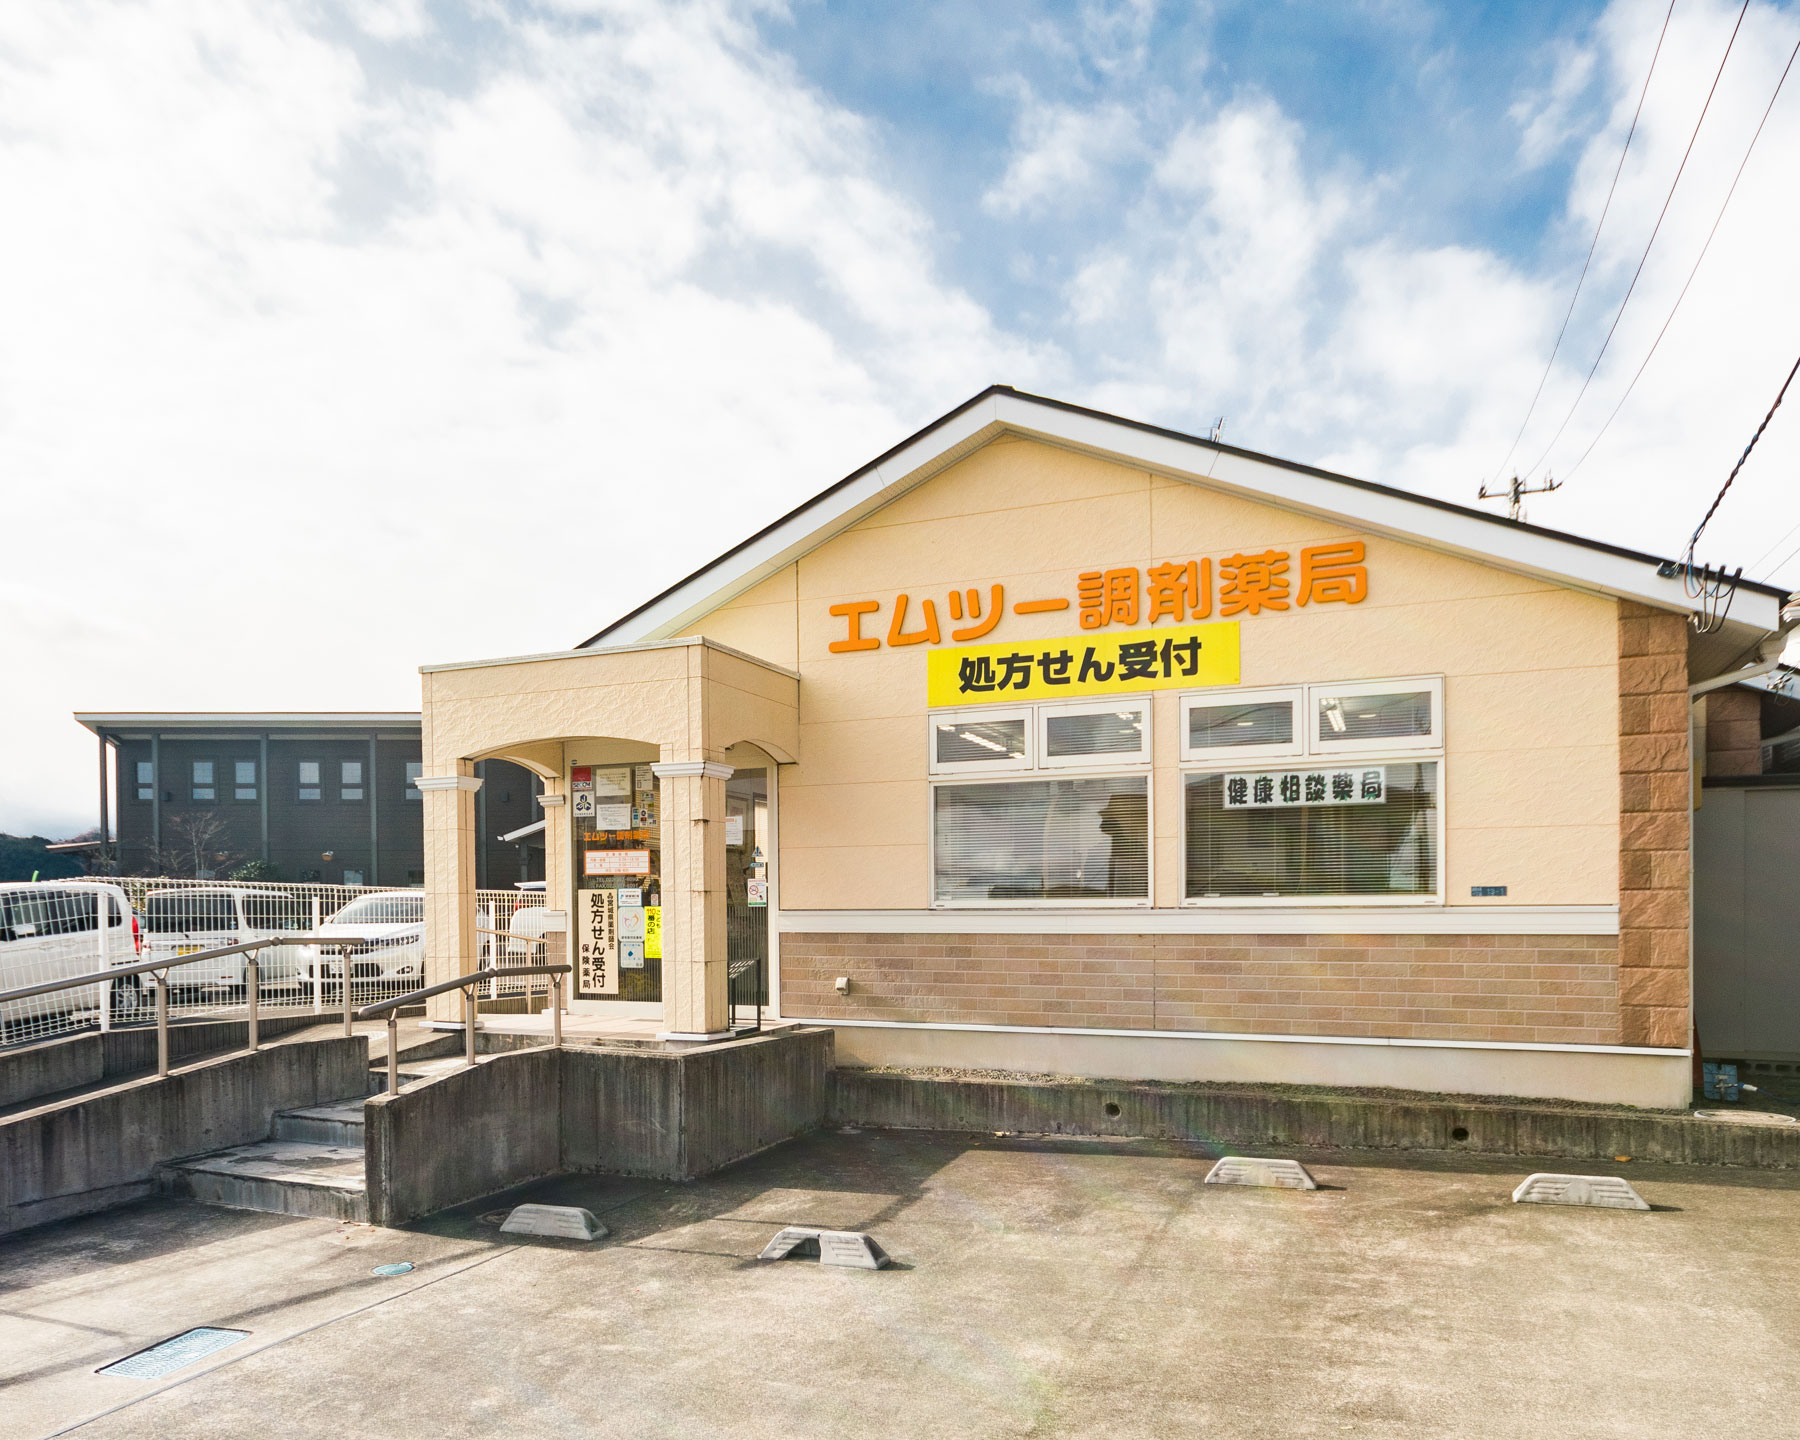 エムツー調剤薬局 鈎取店の店舗画像